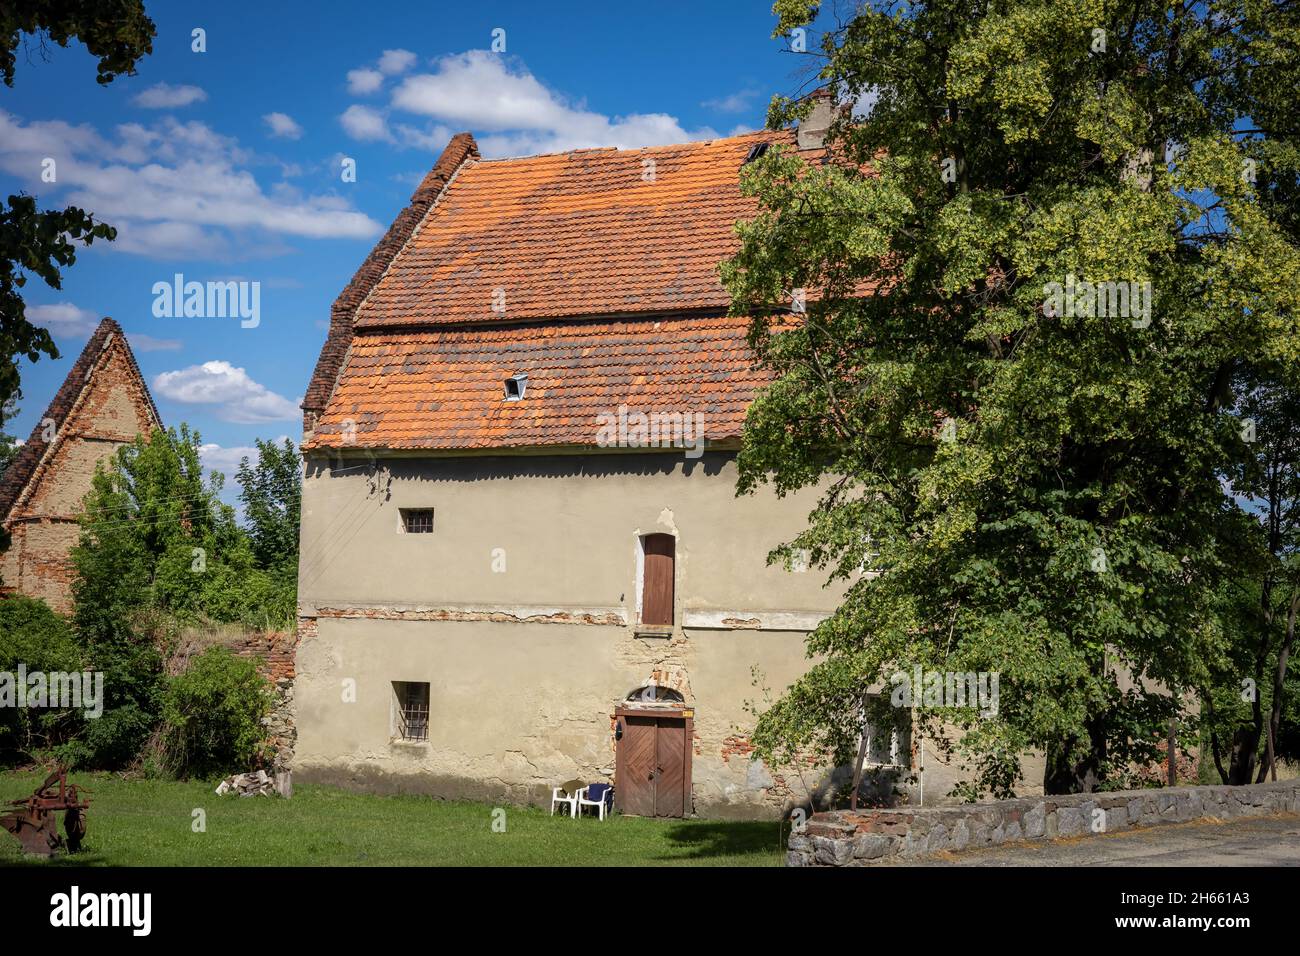 Sobotka, Polonia - 6 luglio 2021: Una vecchia casa in mattoni con tetto in tegole arancioni nel villaggio di Strzegomiany. Foto Stock